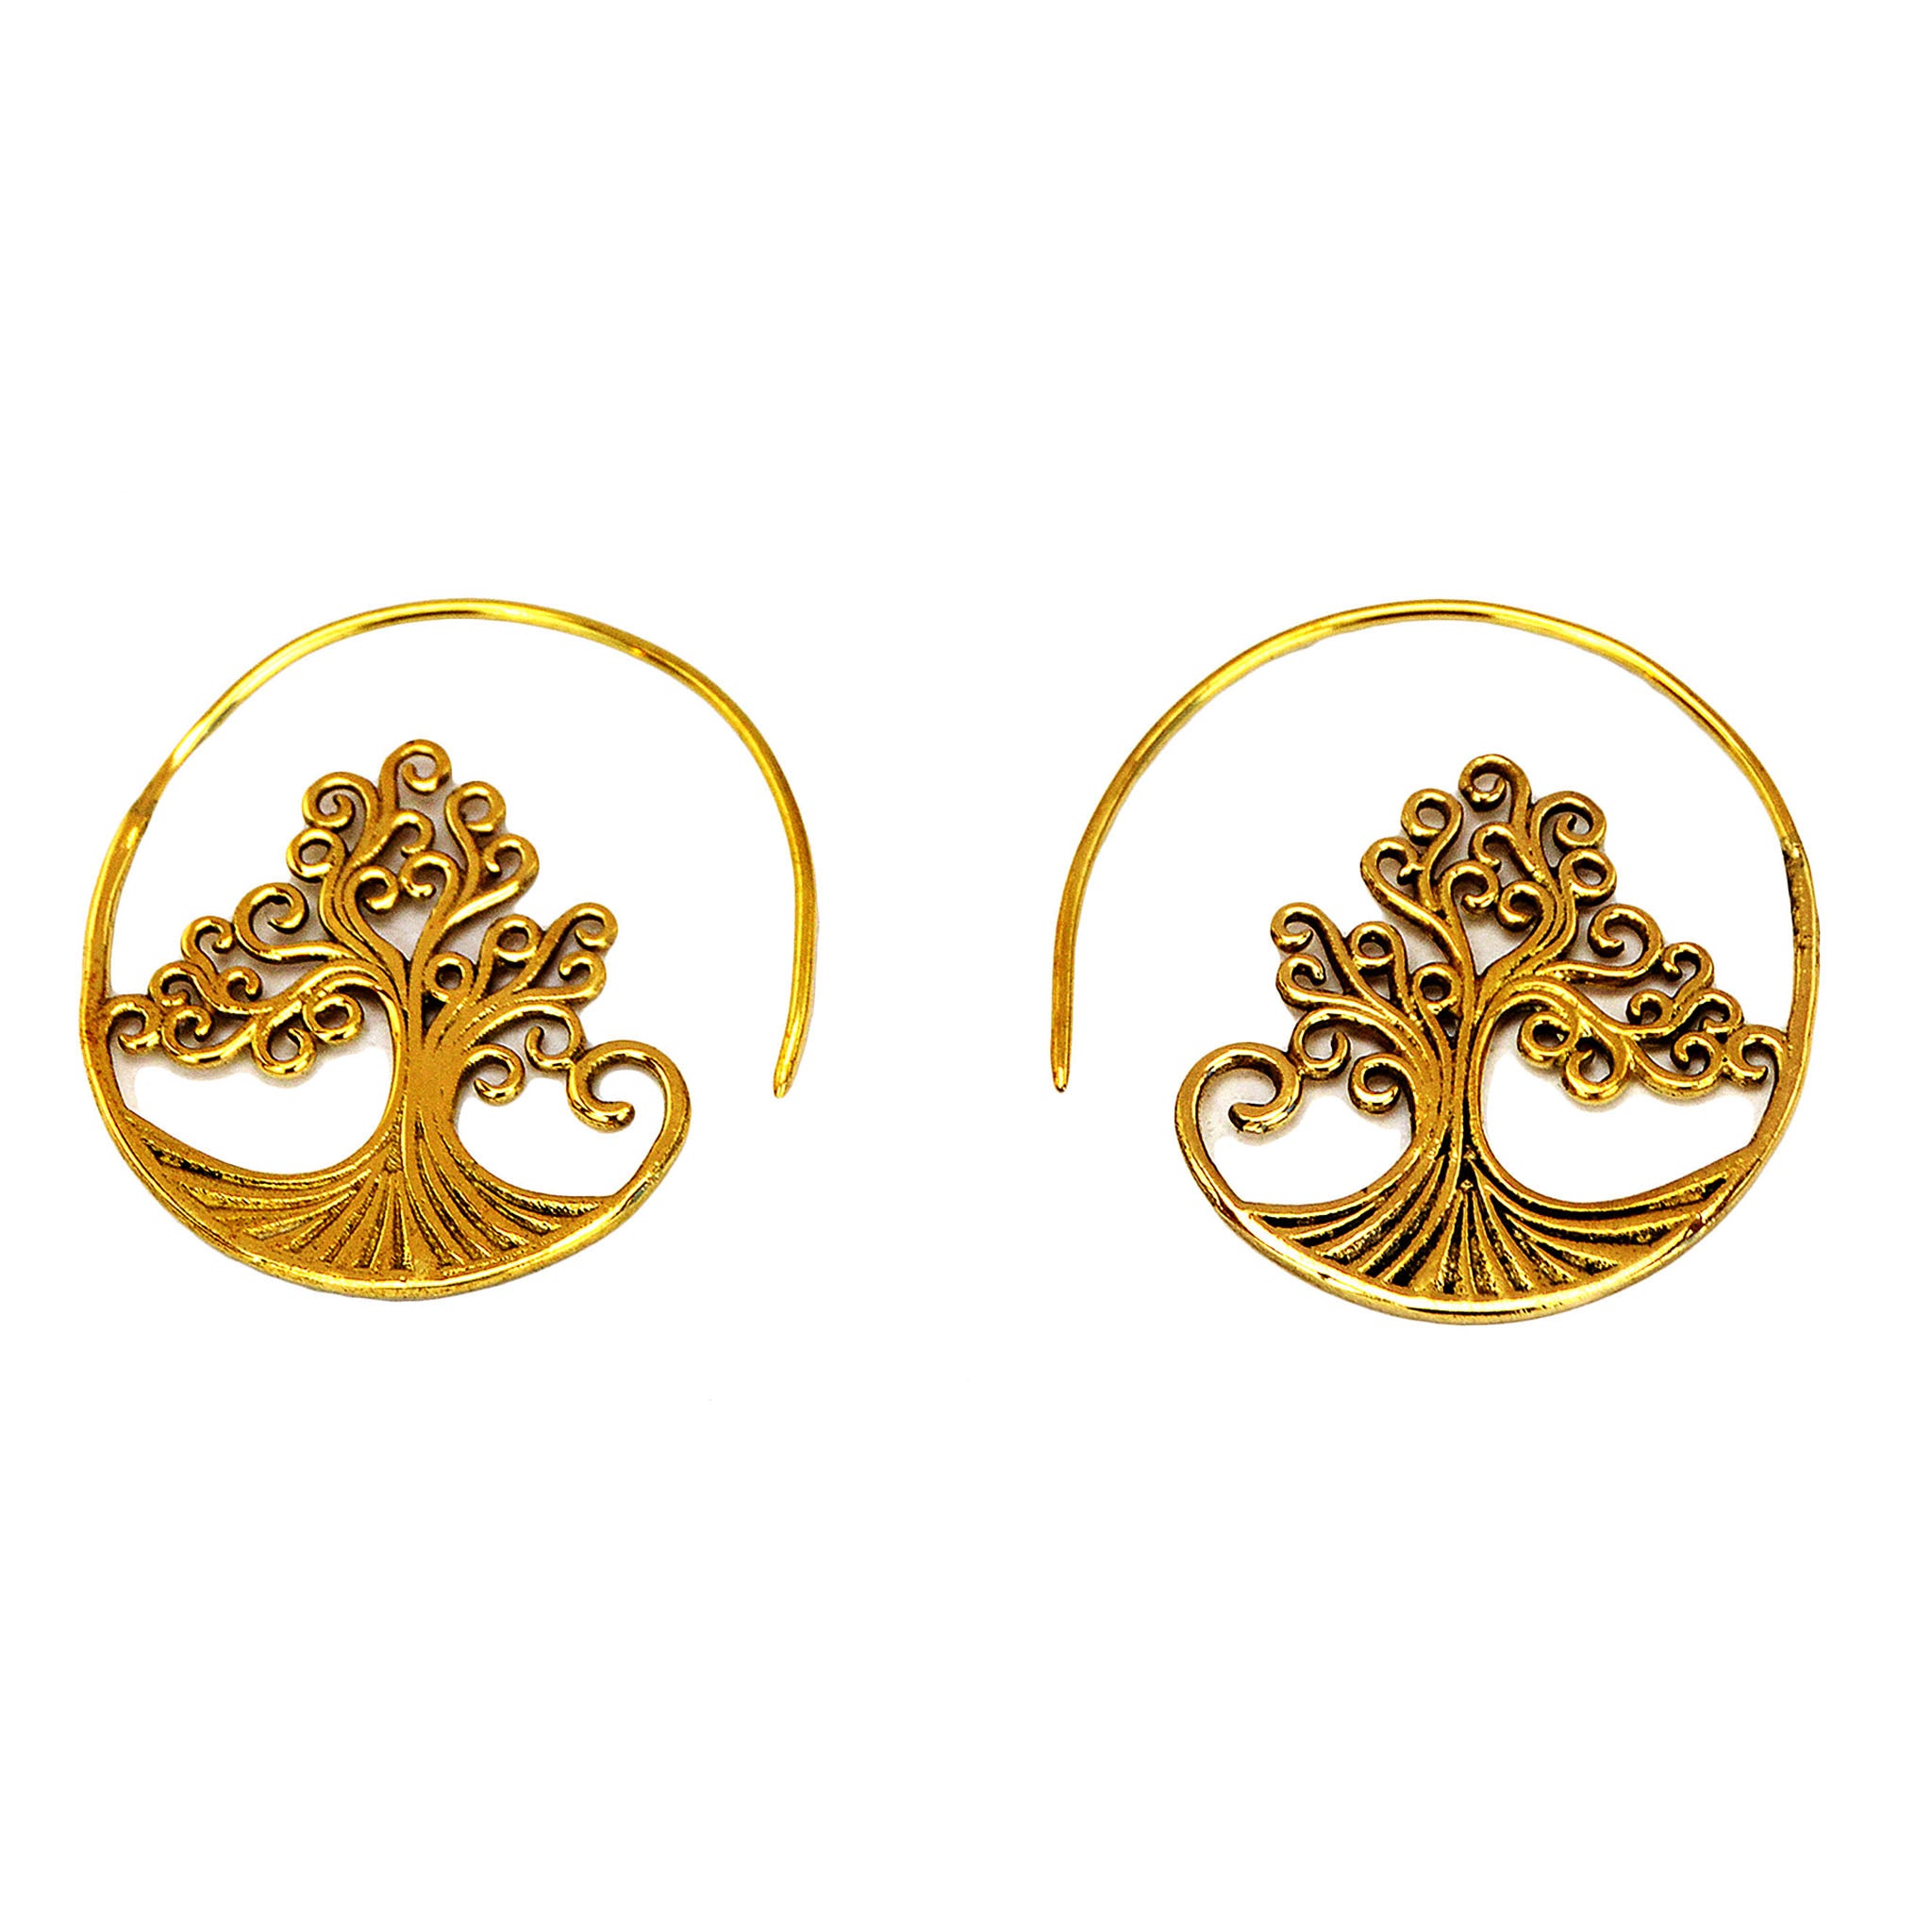 Brass spiral earrings